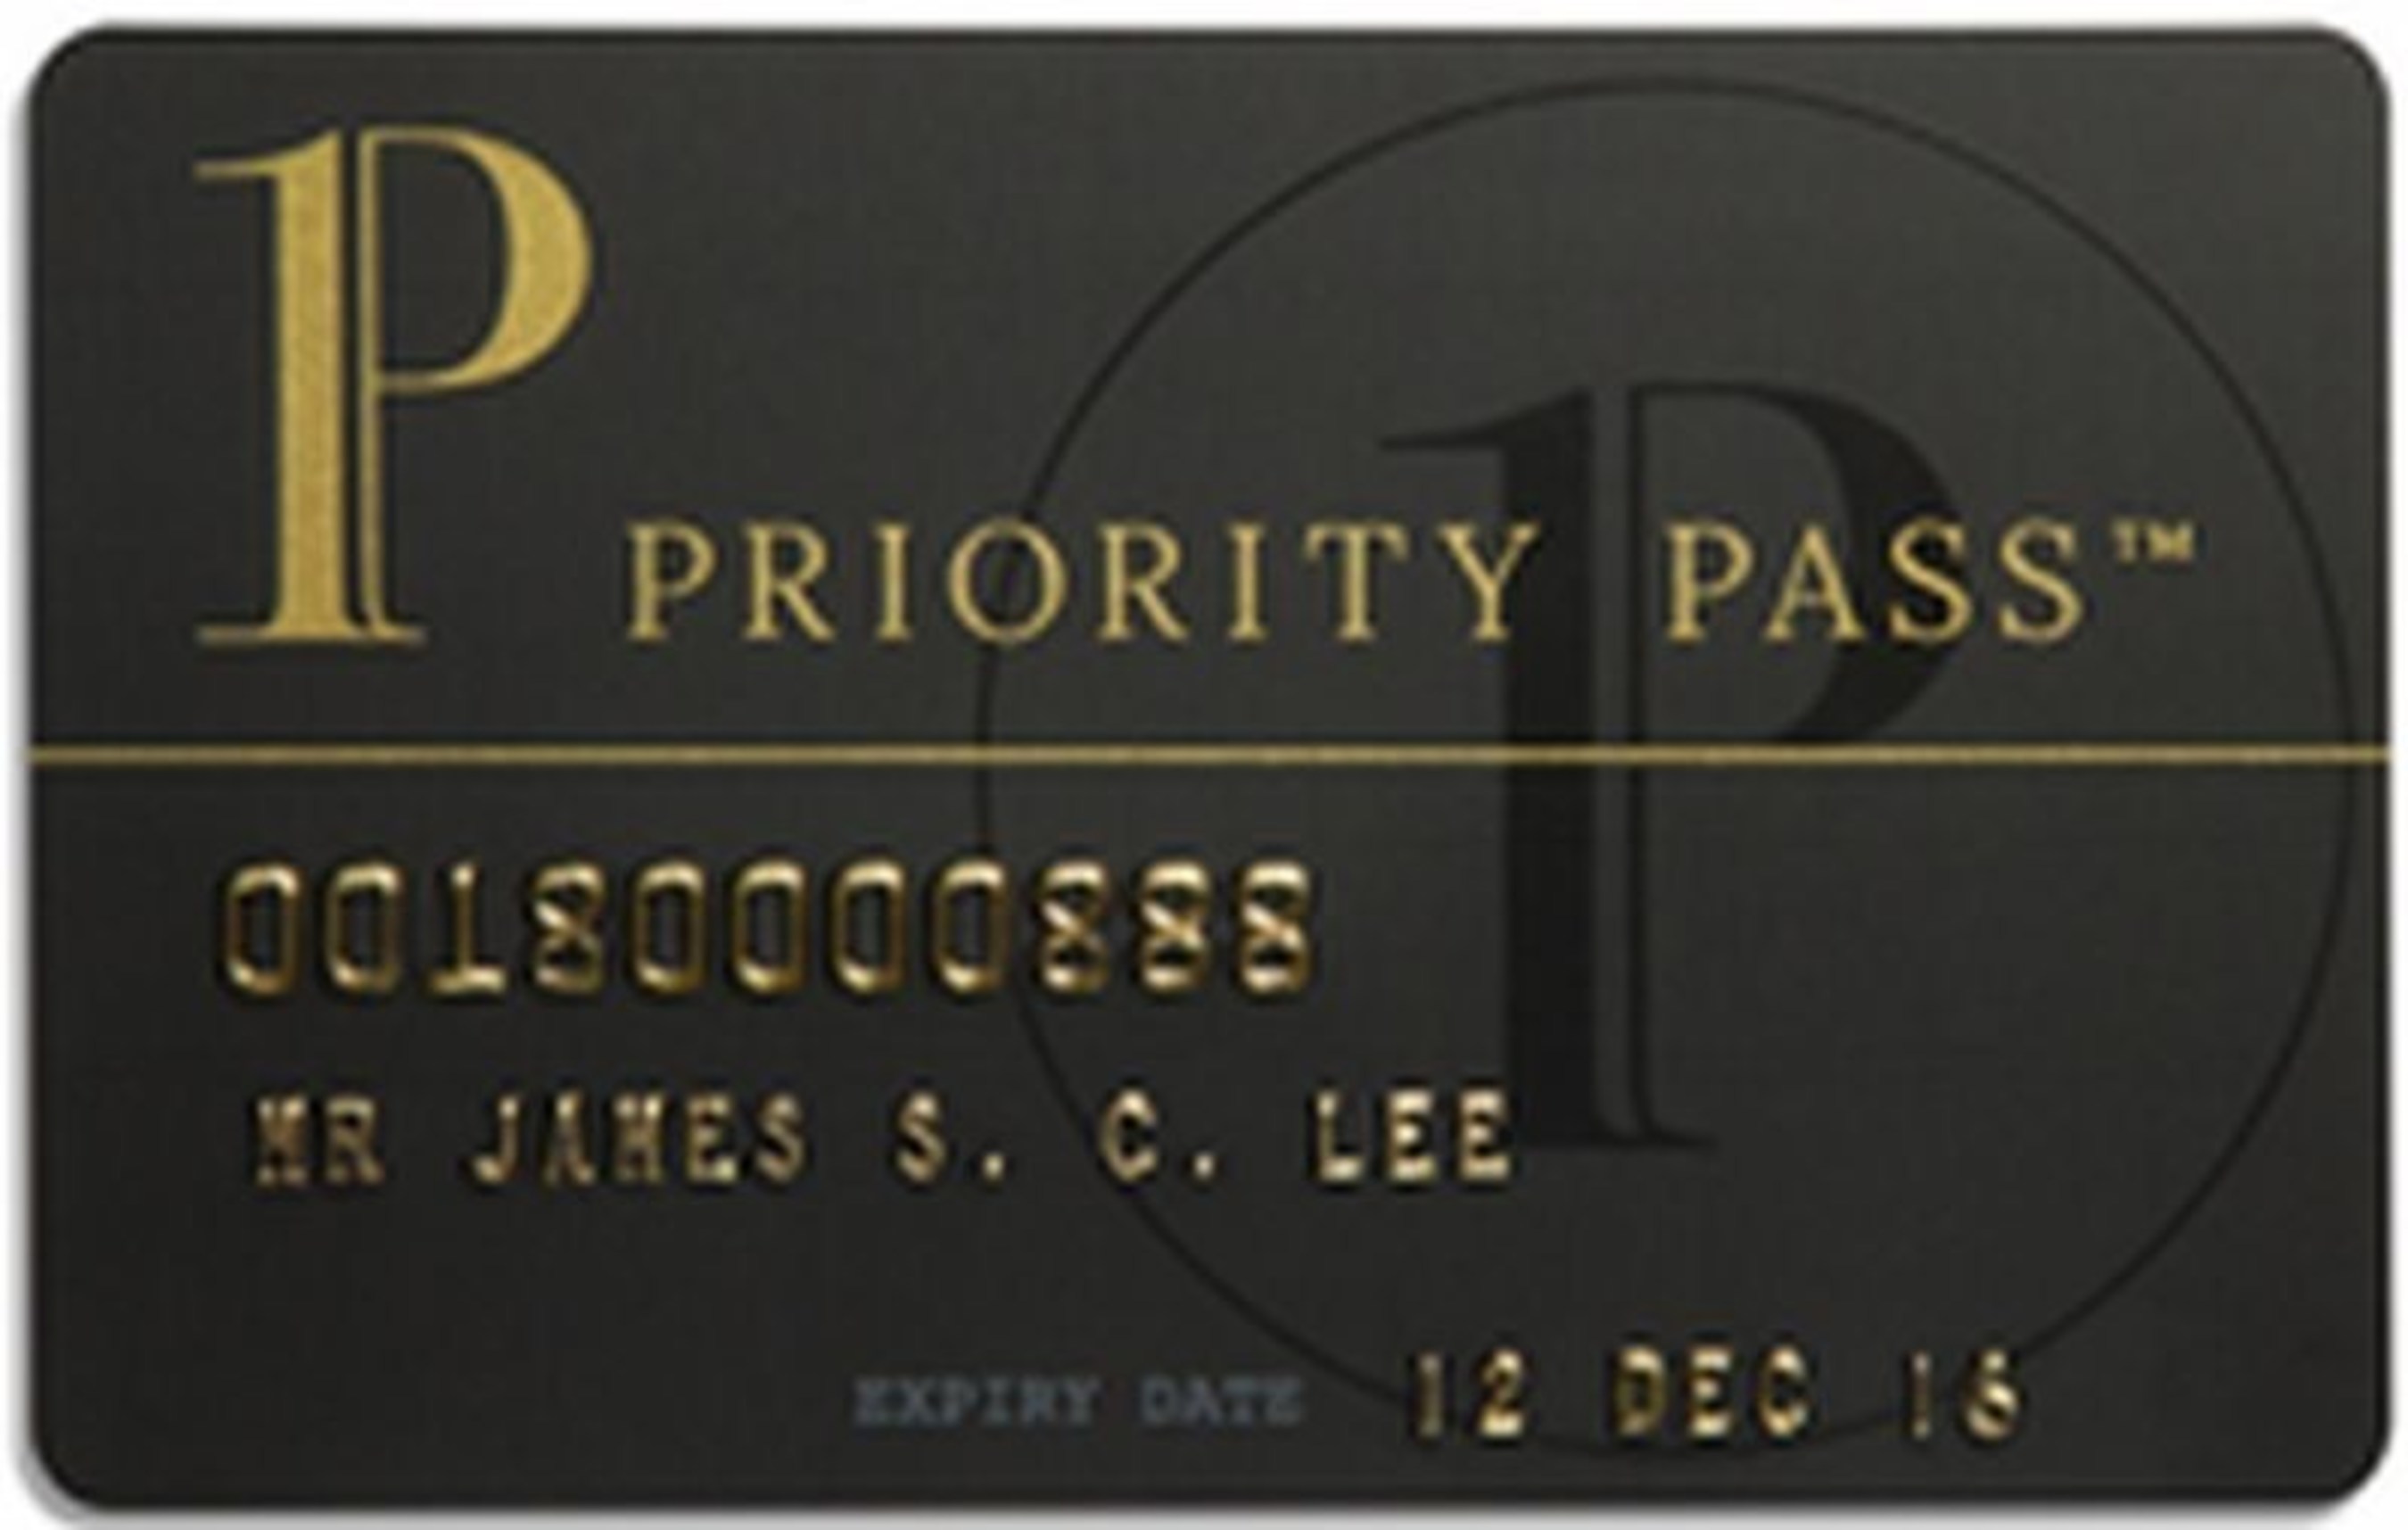 Priority Pass (PRNewsFoto/Priority Pass)